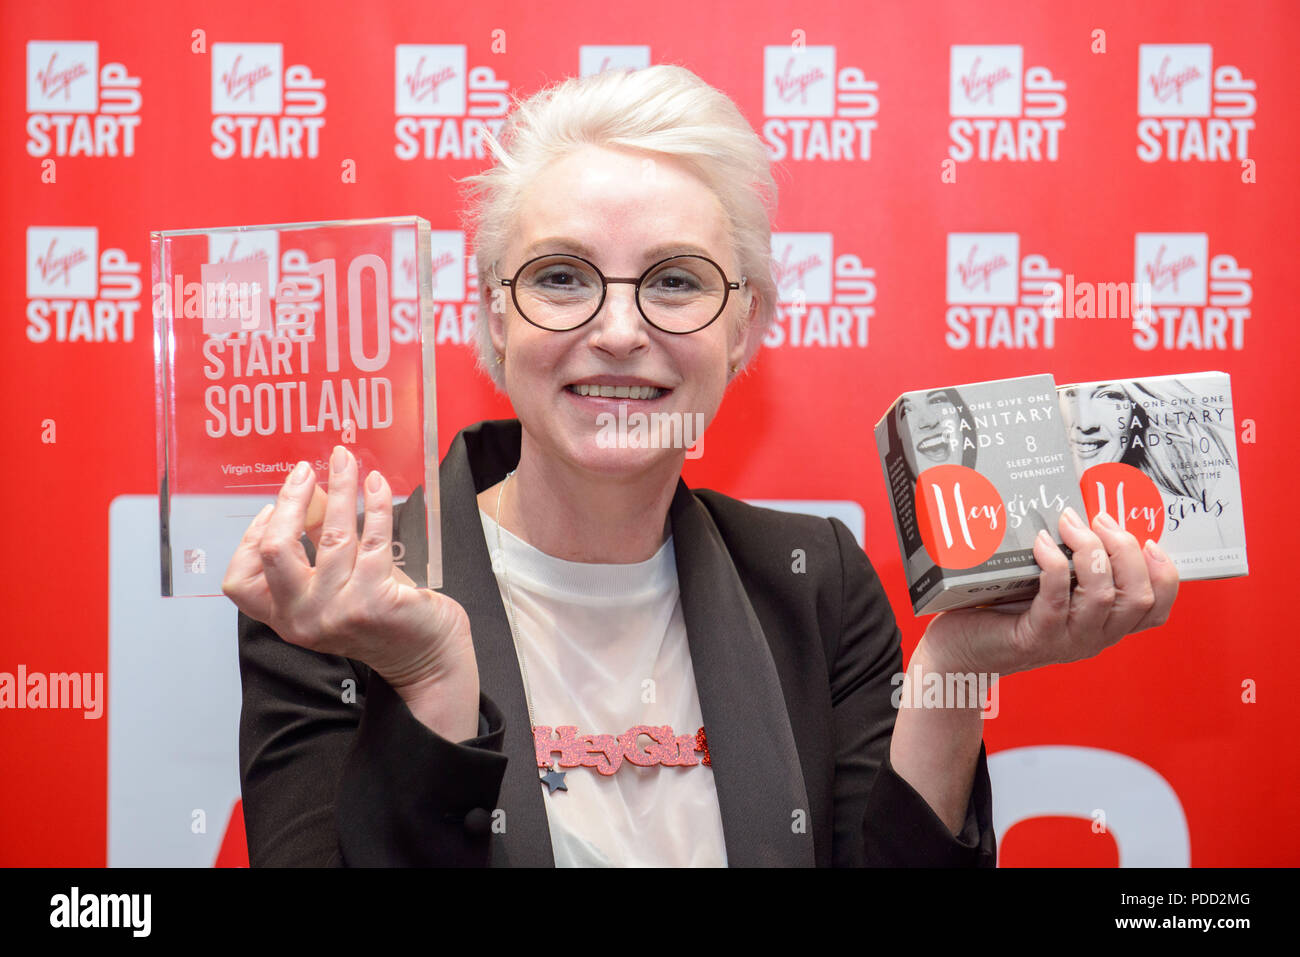 Virgin Start up, Final, Rathison Edinburgh Scotland 10 è una straordinaria opportunità per sostenere gli imprenditori scozzesi A. Foto Stock